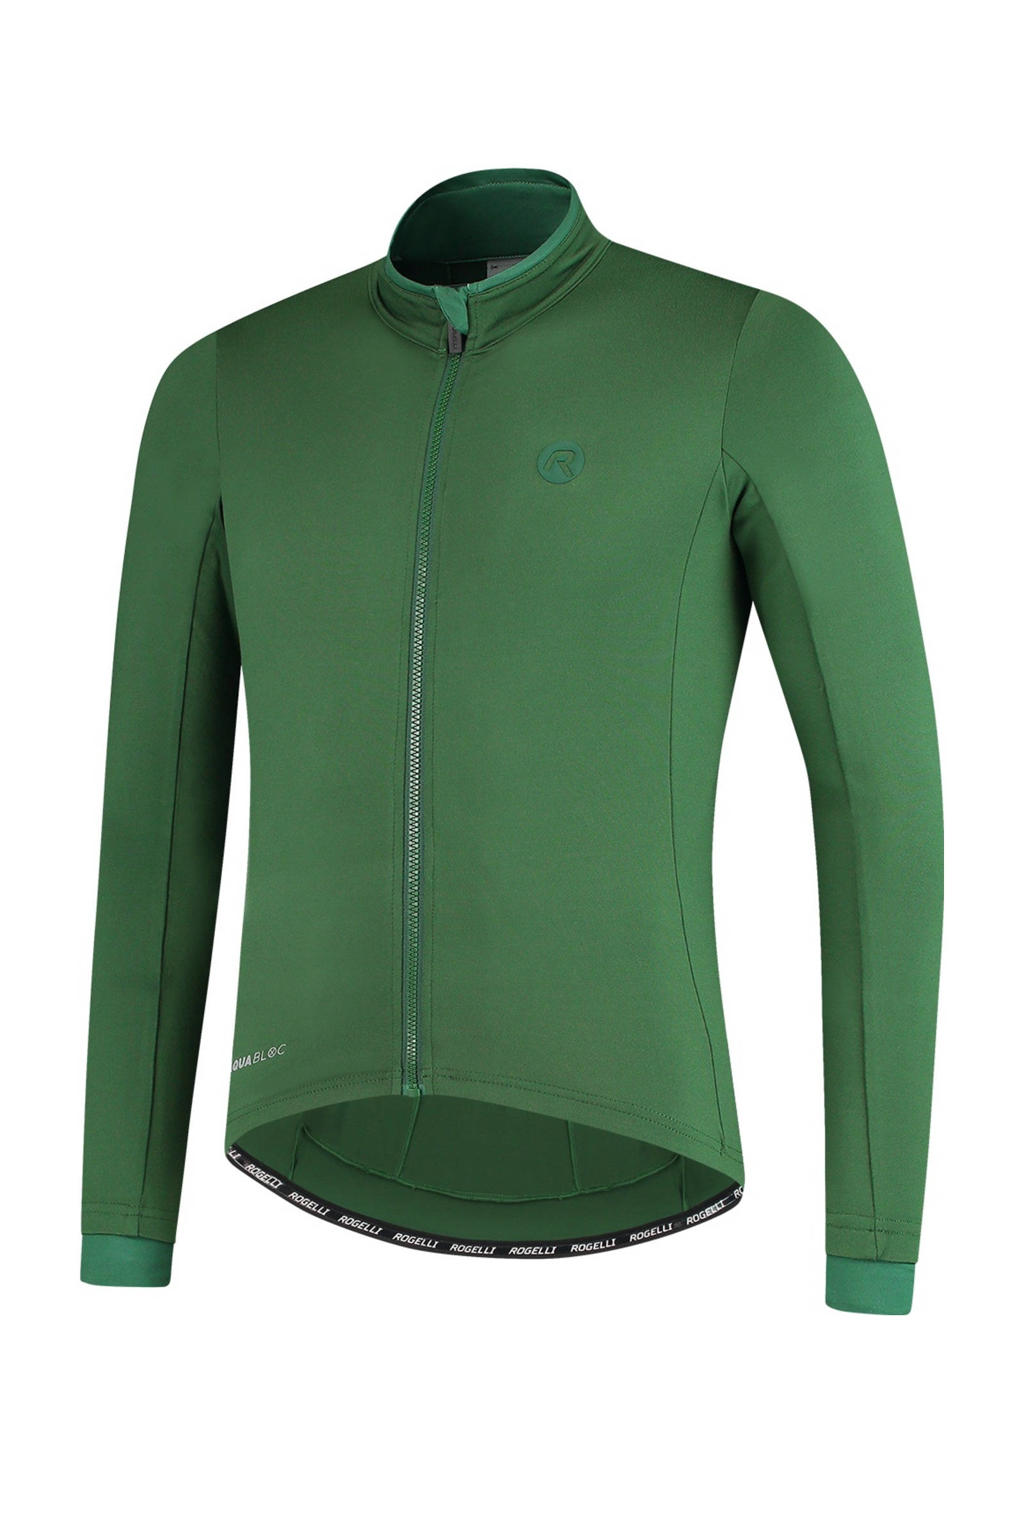 Groene heren Rogelli fietsshirt Essential van polyester met logo dessin, lange mouwen, opstaande kraag en ritssluiting